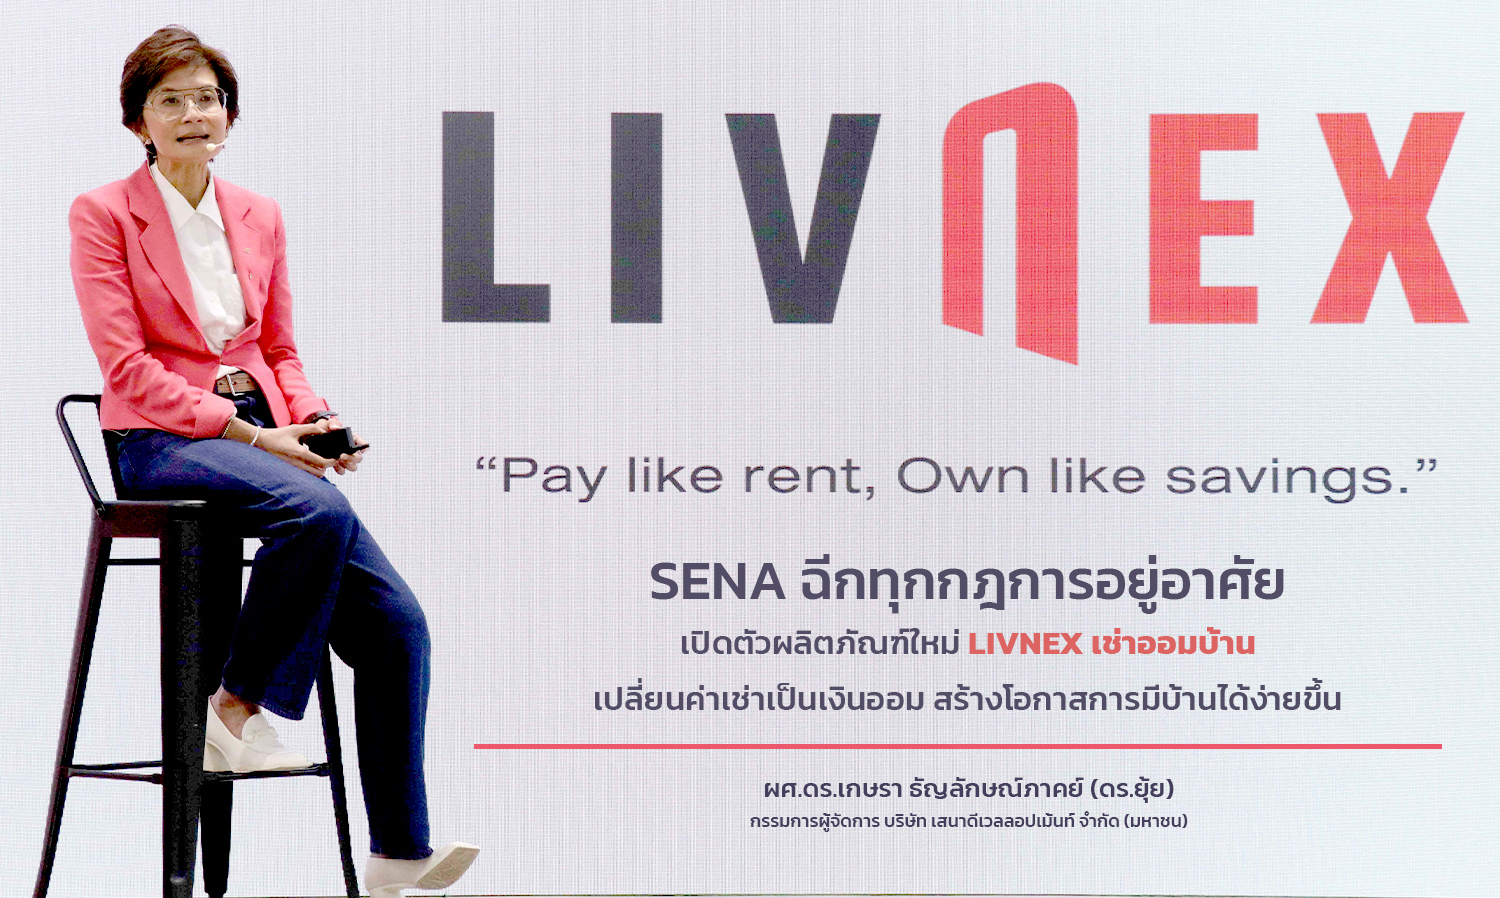 SENA  เปิดตัวผลิตภัณฑ์ใหม่ LivNex เช่าออมบ้าน เปลี่ยนค่าเช่าเป็นเงินออม